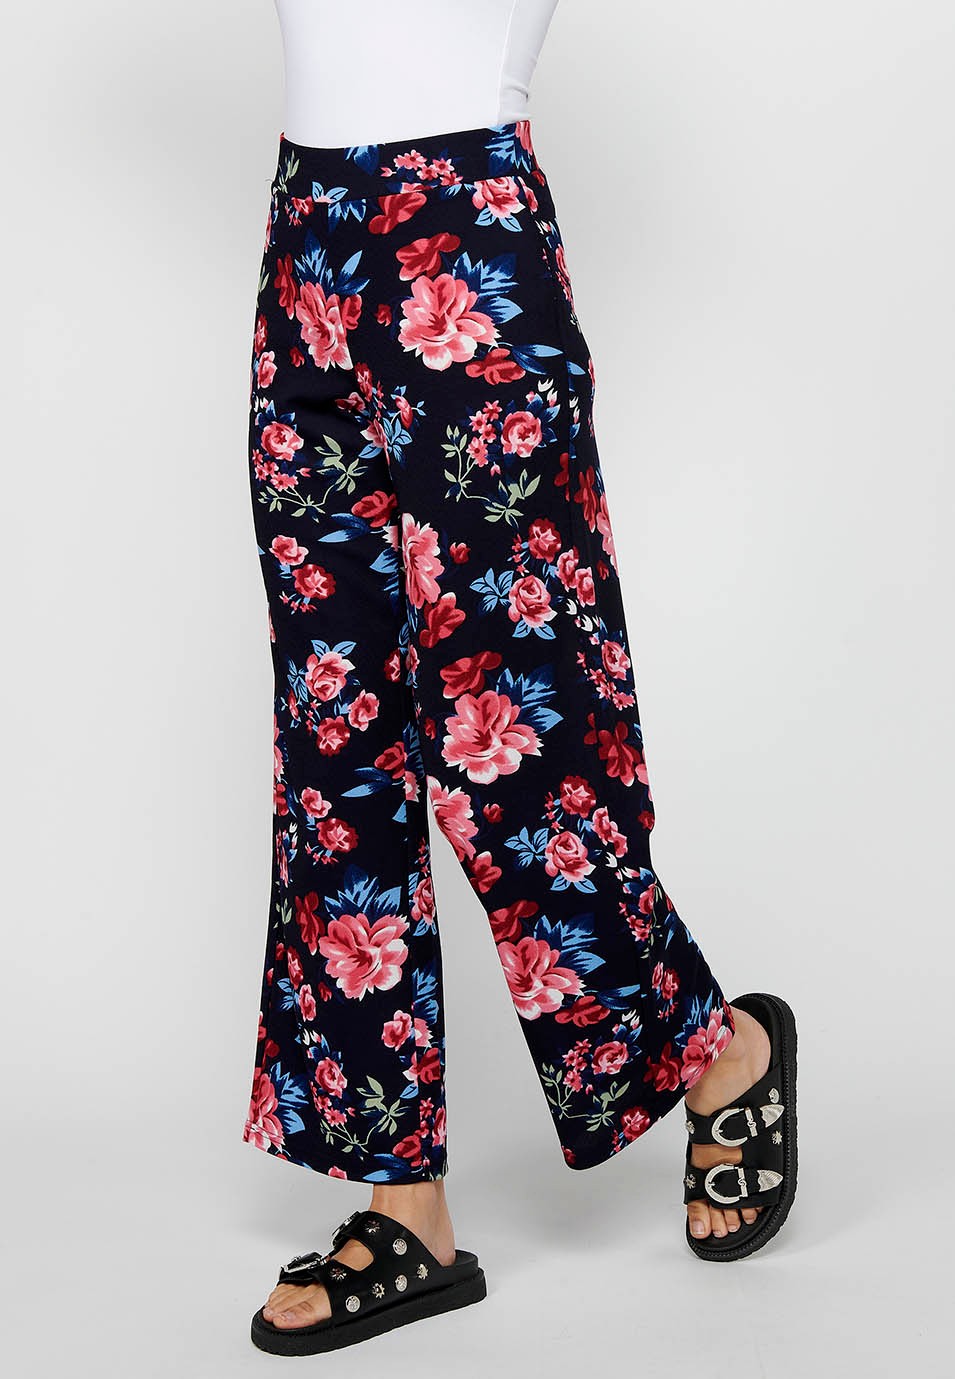 Pantalon long ample avec taille élastique caoutchoutée et imprimé floral Marine pour Femme 3